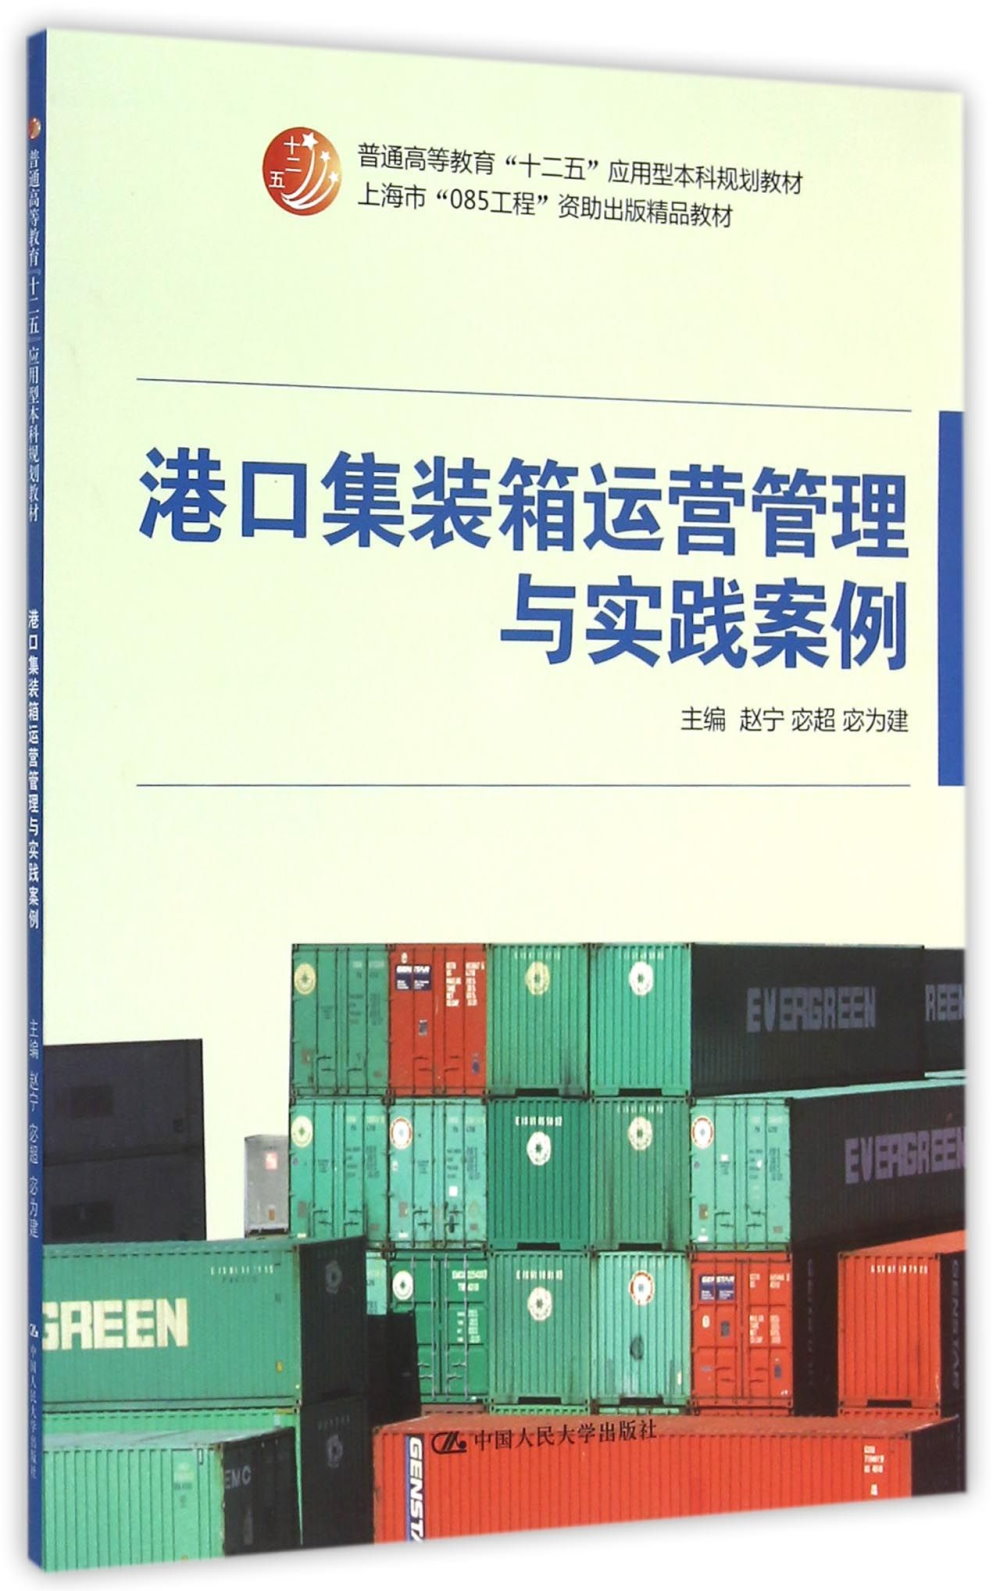 港口集裝箱運營管理與實踐案例